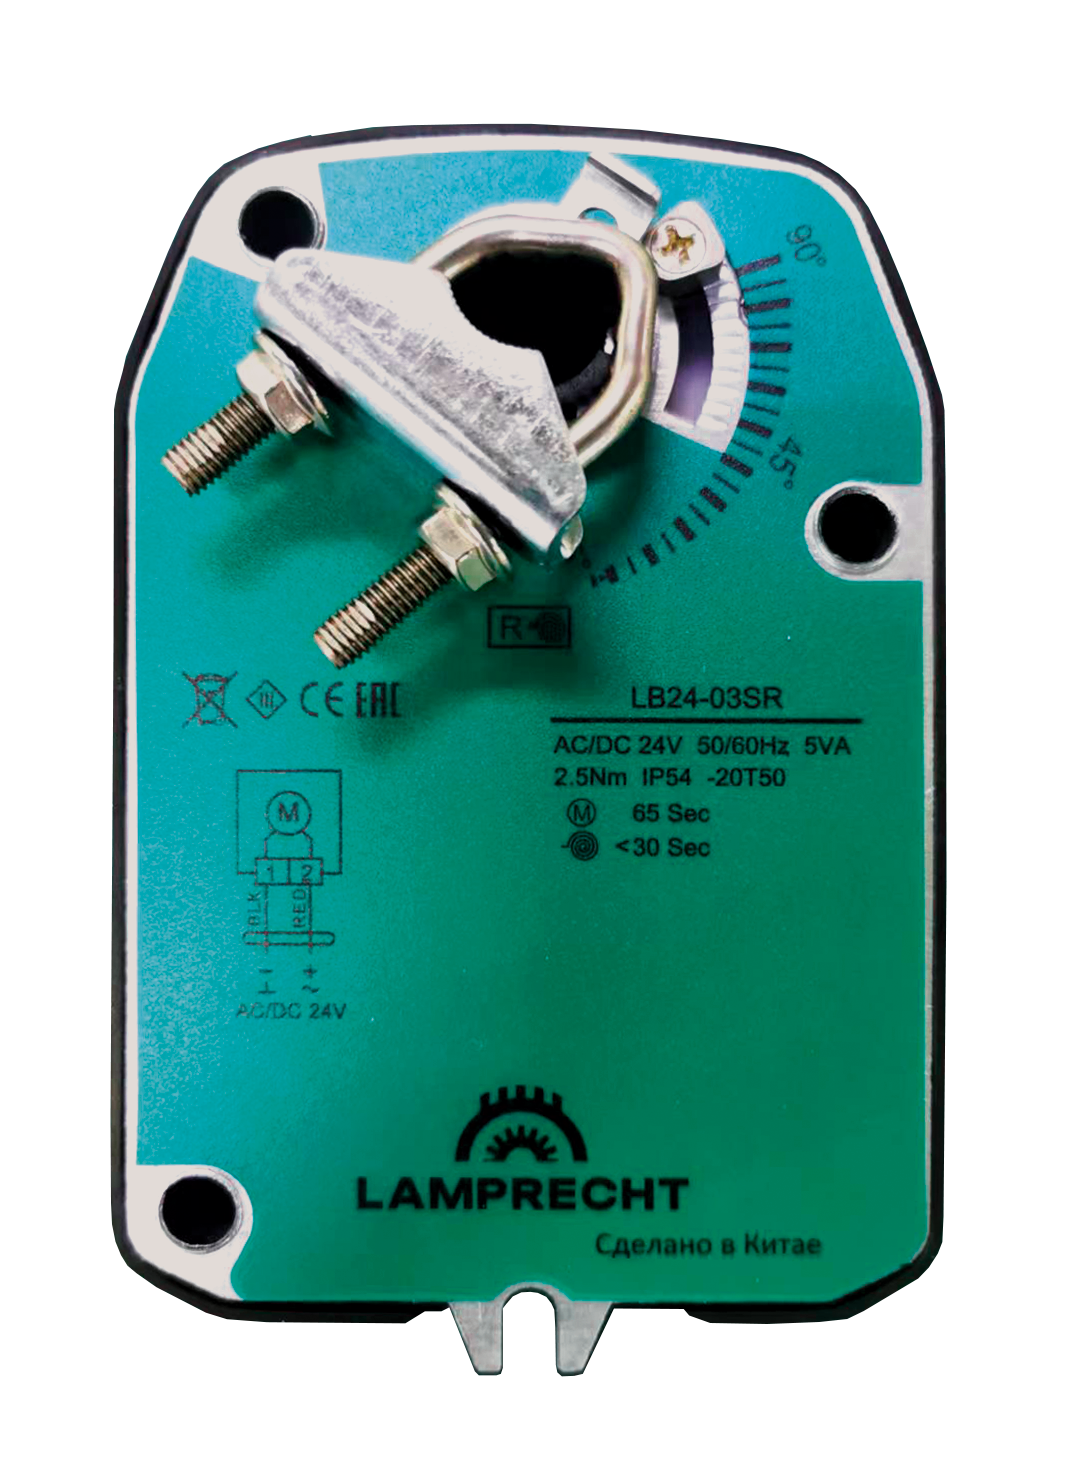 Электропривод Lamprecht LB220-03SR с моментом вращения 3 Нм с возвратной пружиной